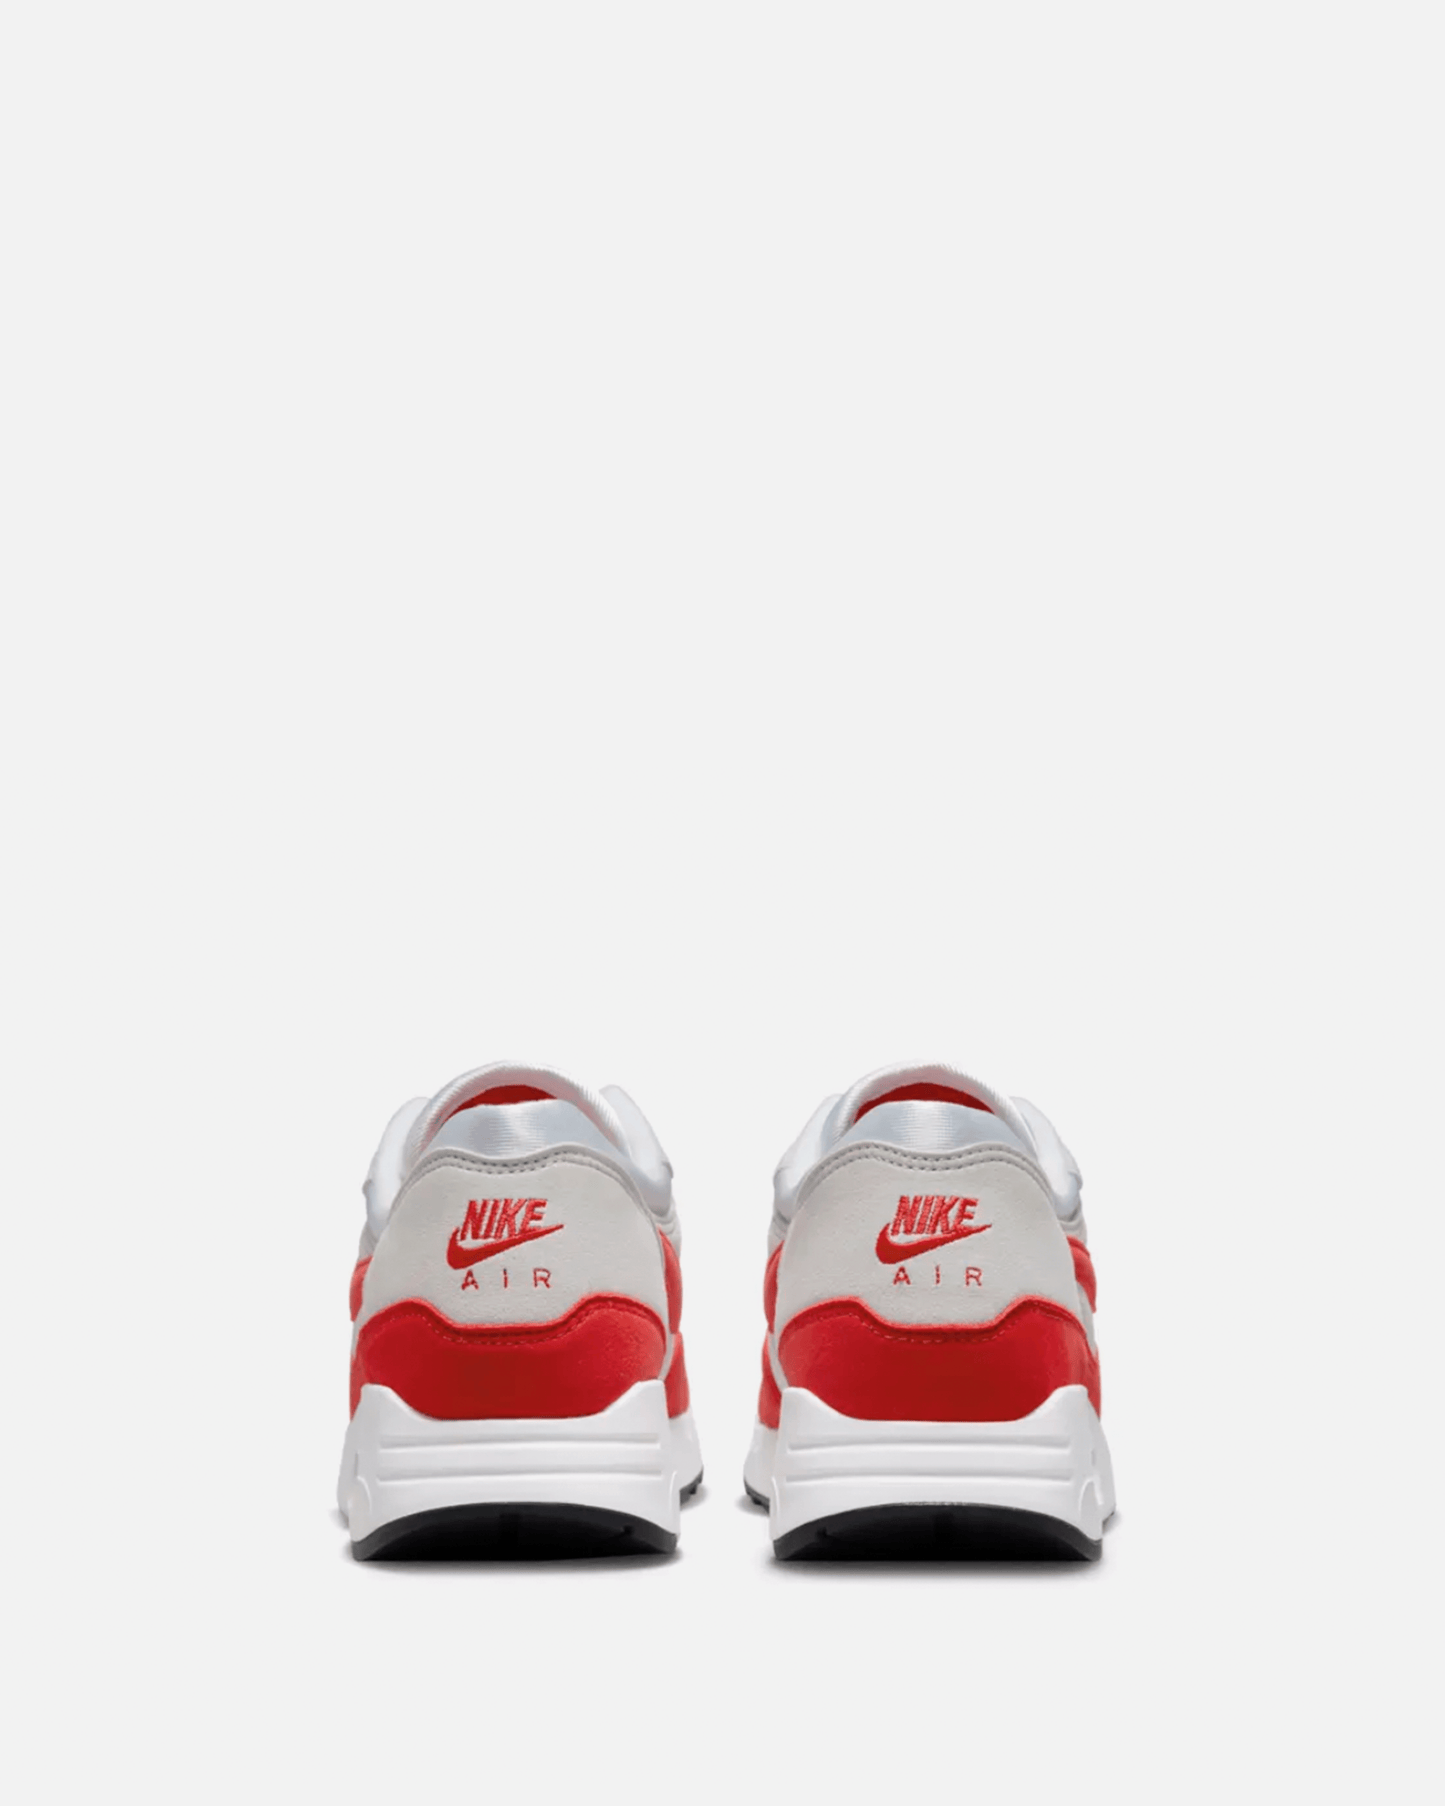 Nike Men's Sneakers Air Max 1 '86 Premium Sports Red'